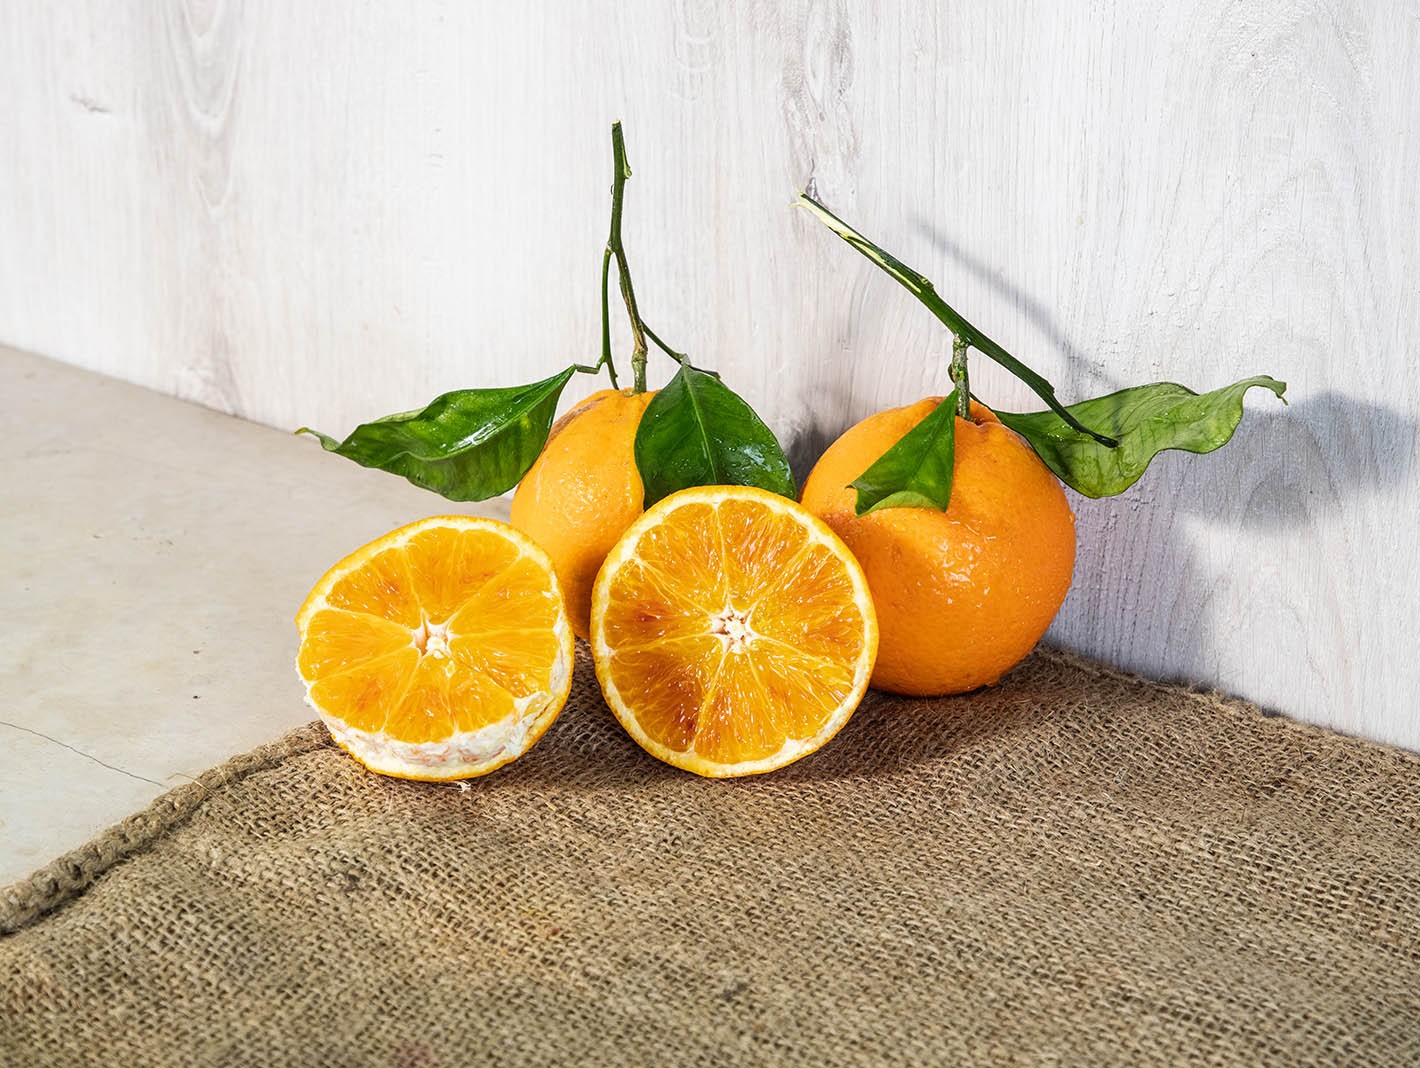 Oranfrutta Arance Tarocco Extra